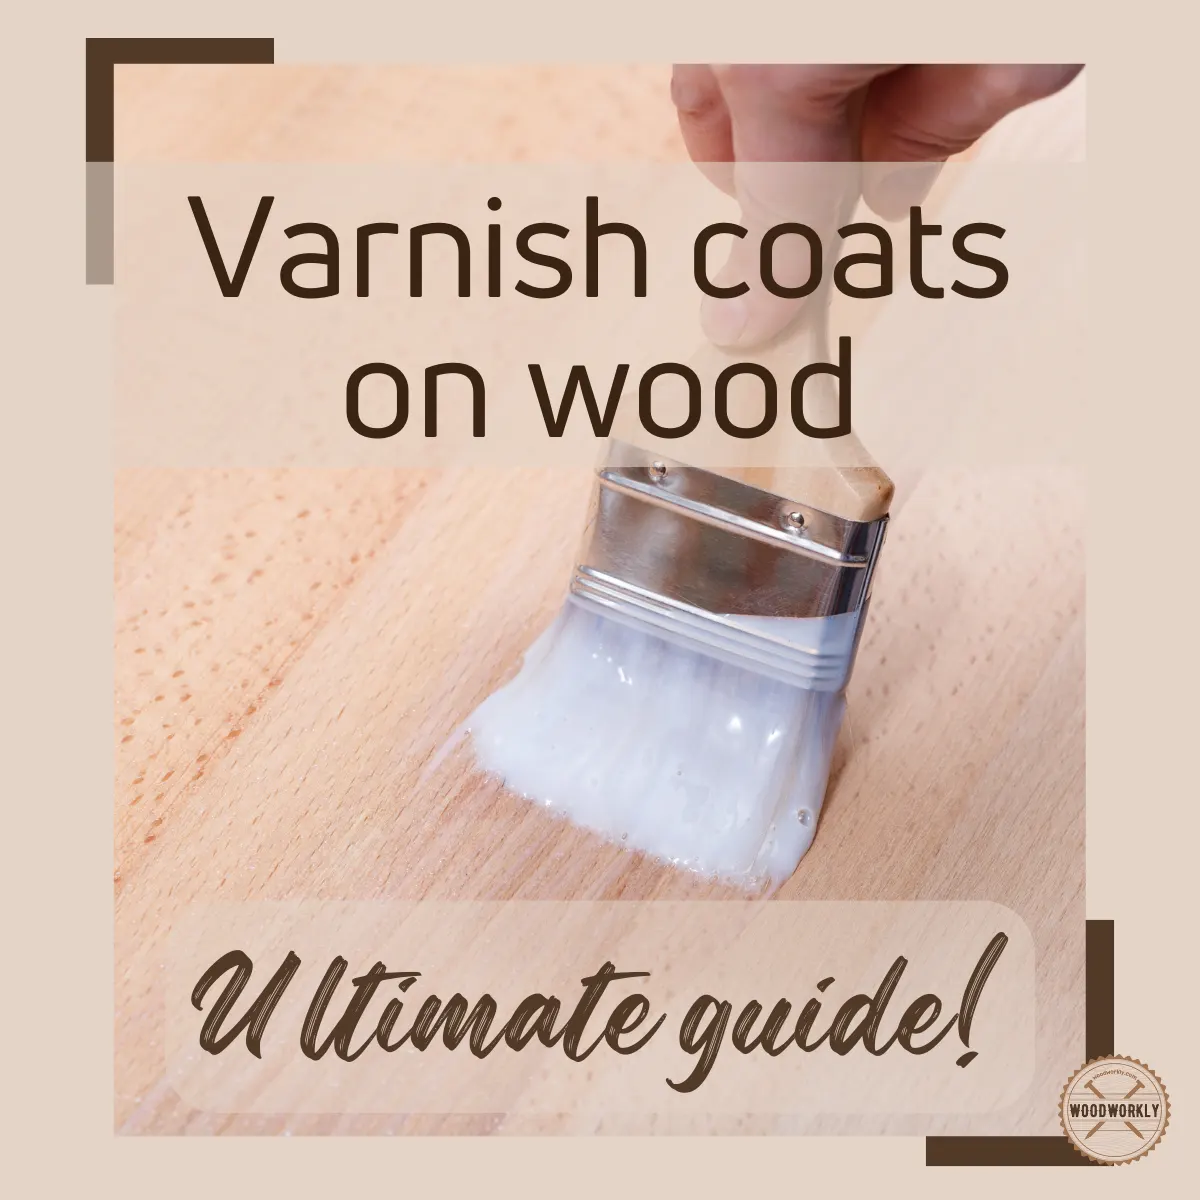 How Many Coats Of Varnish On Wood